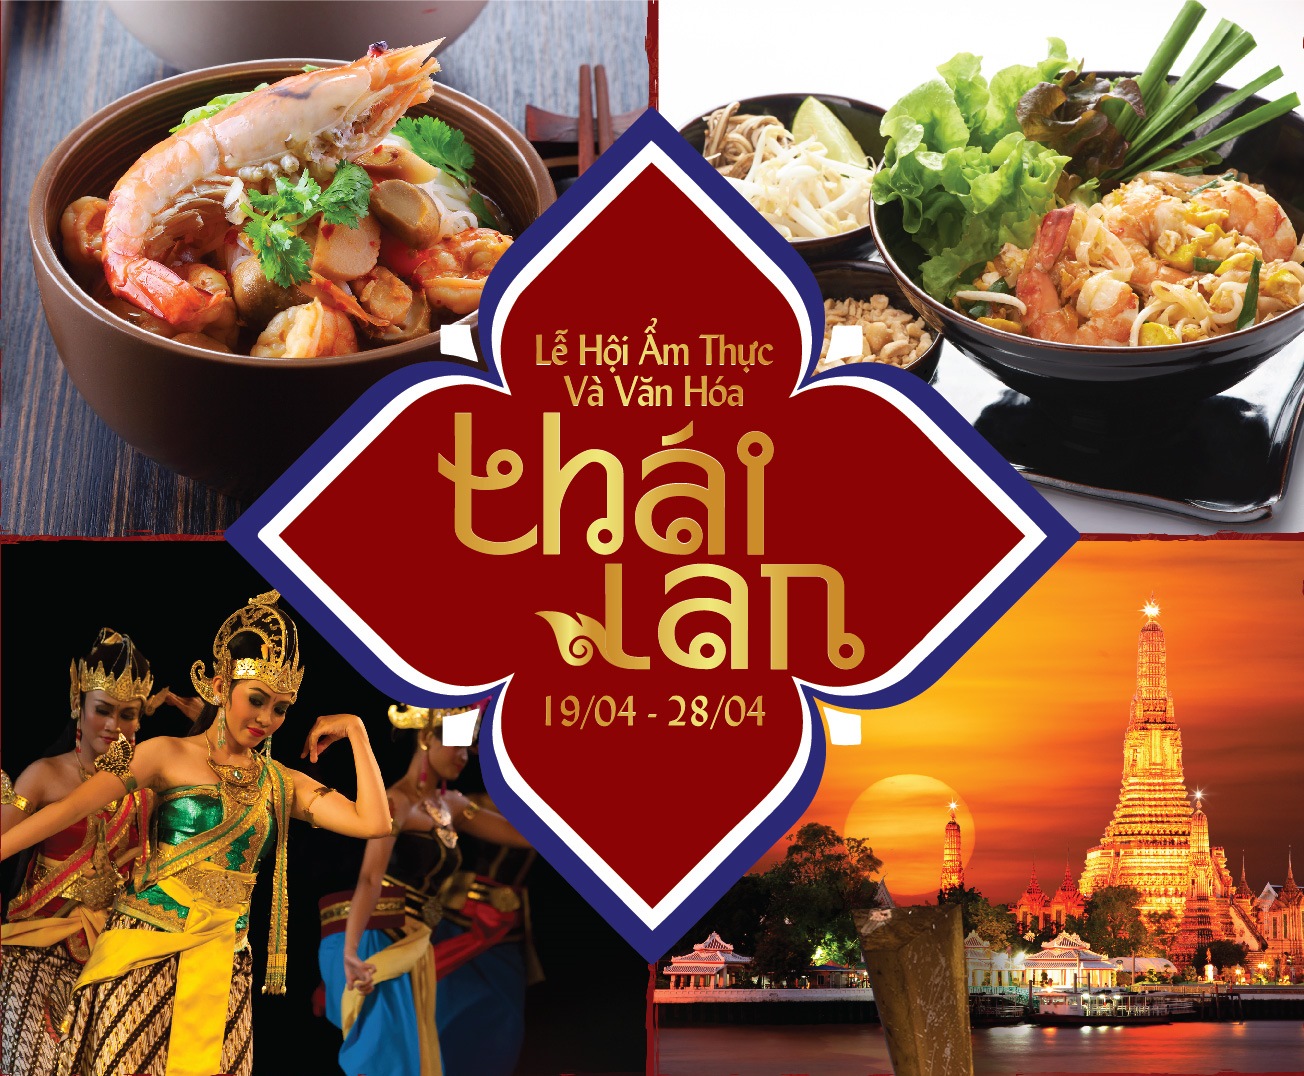 Lễ hội ẩm thực và văn hóa Thái Lan tại khách sạn Windsor Plaza